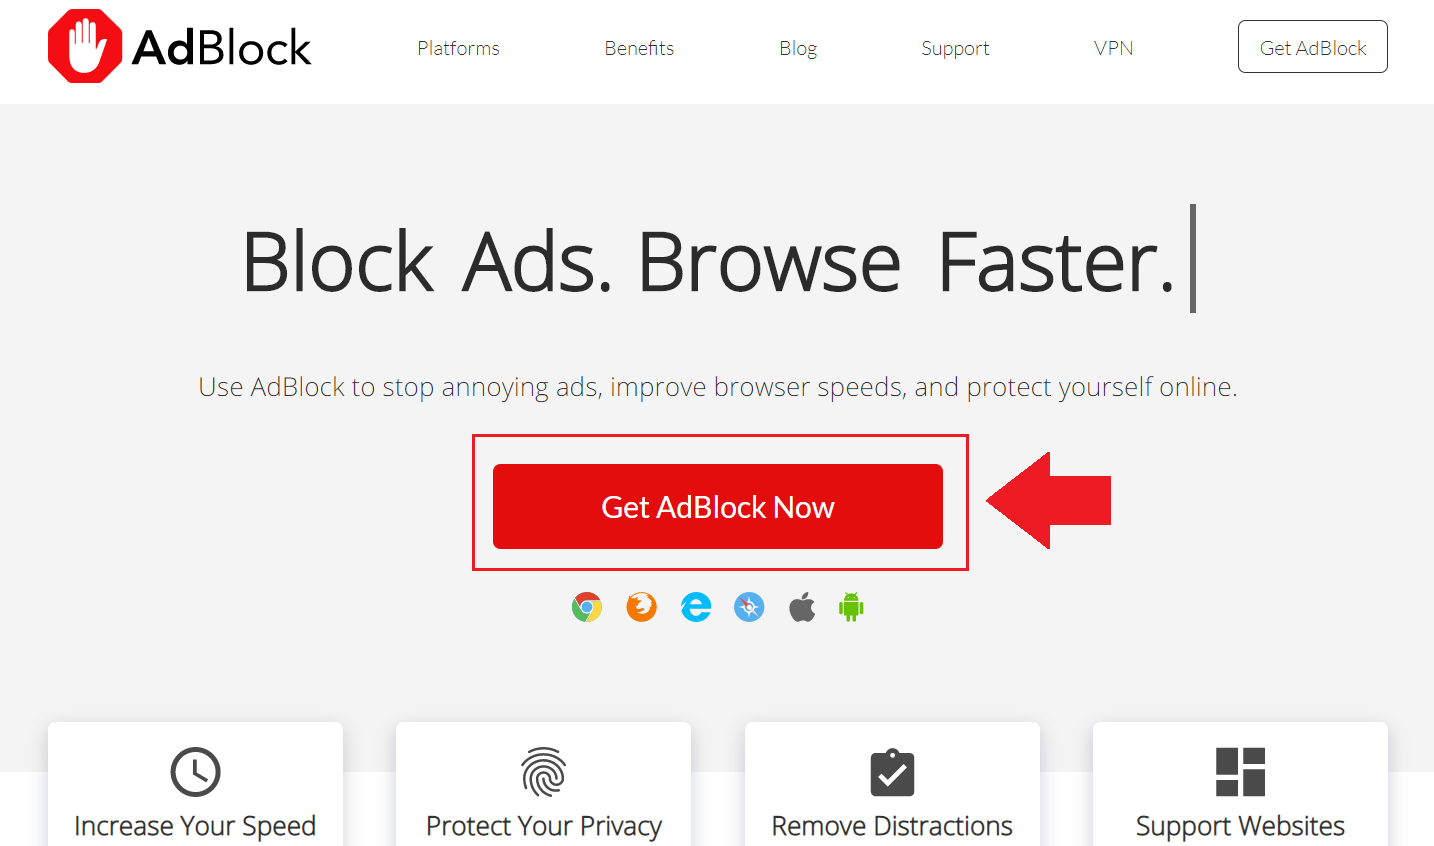 Sử dụng tiện ích mở rộng AdBlock để chặn quảng cáo Chrome trên máy tính